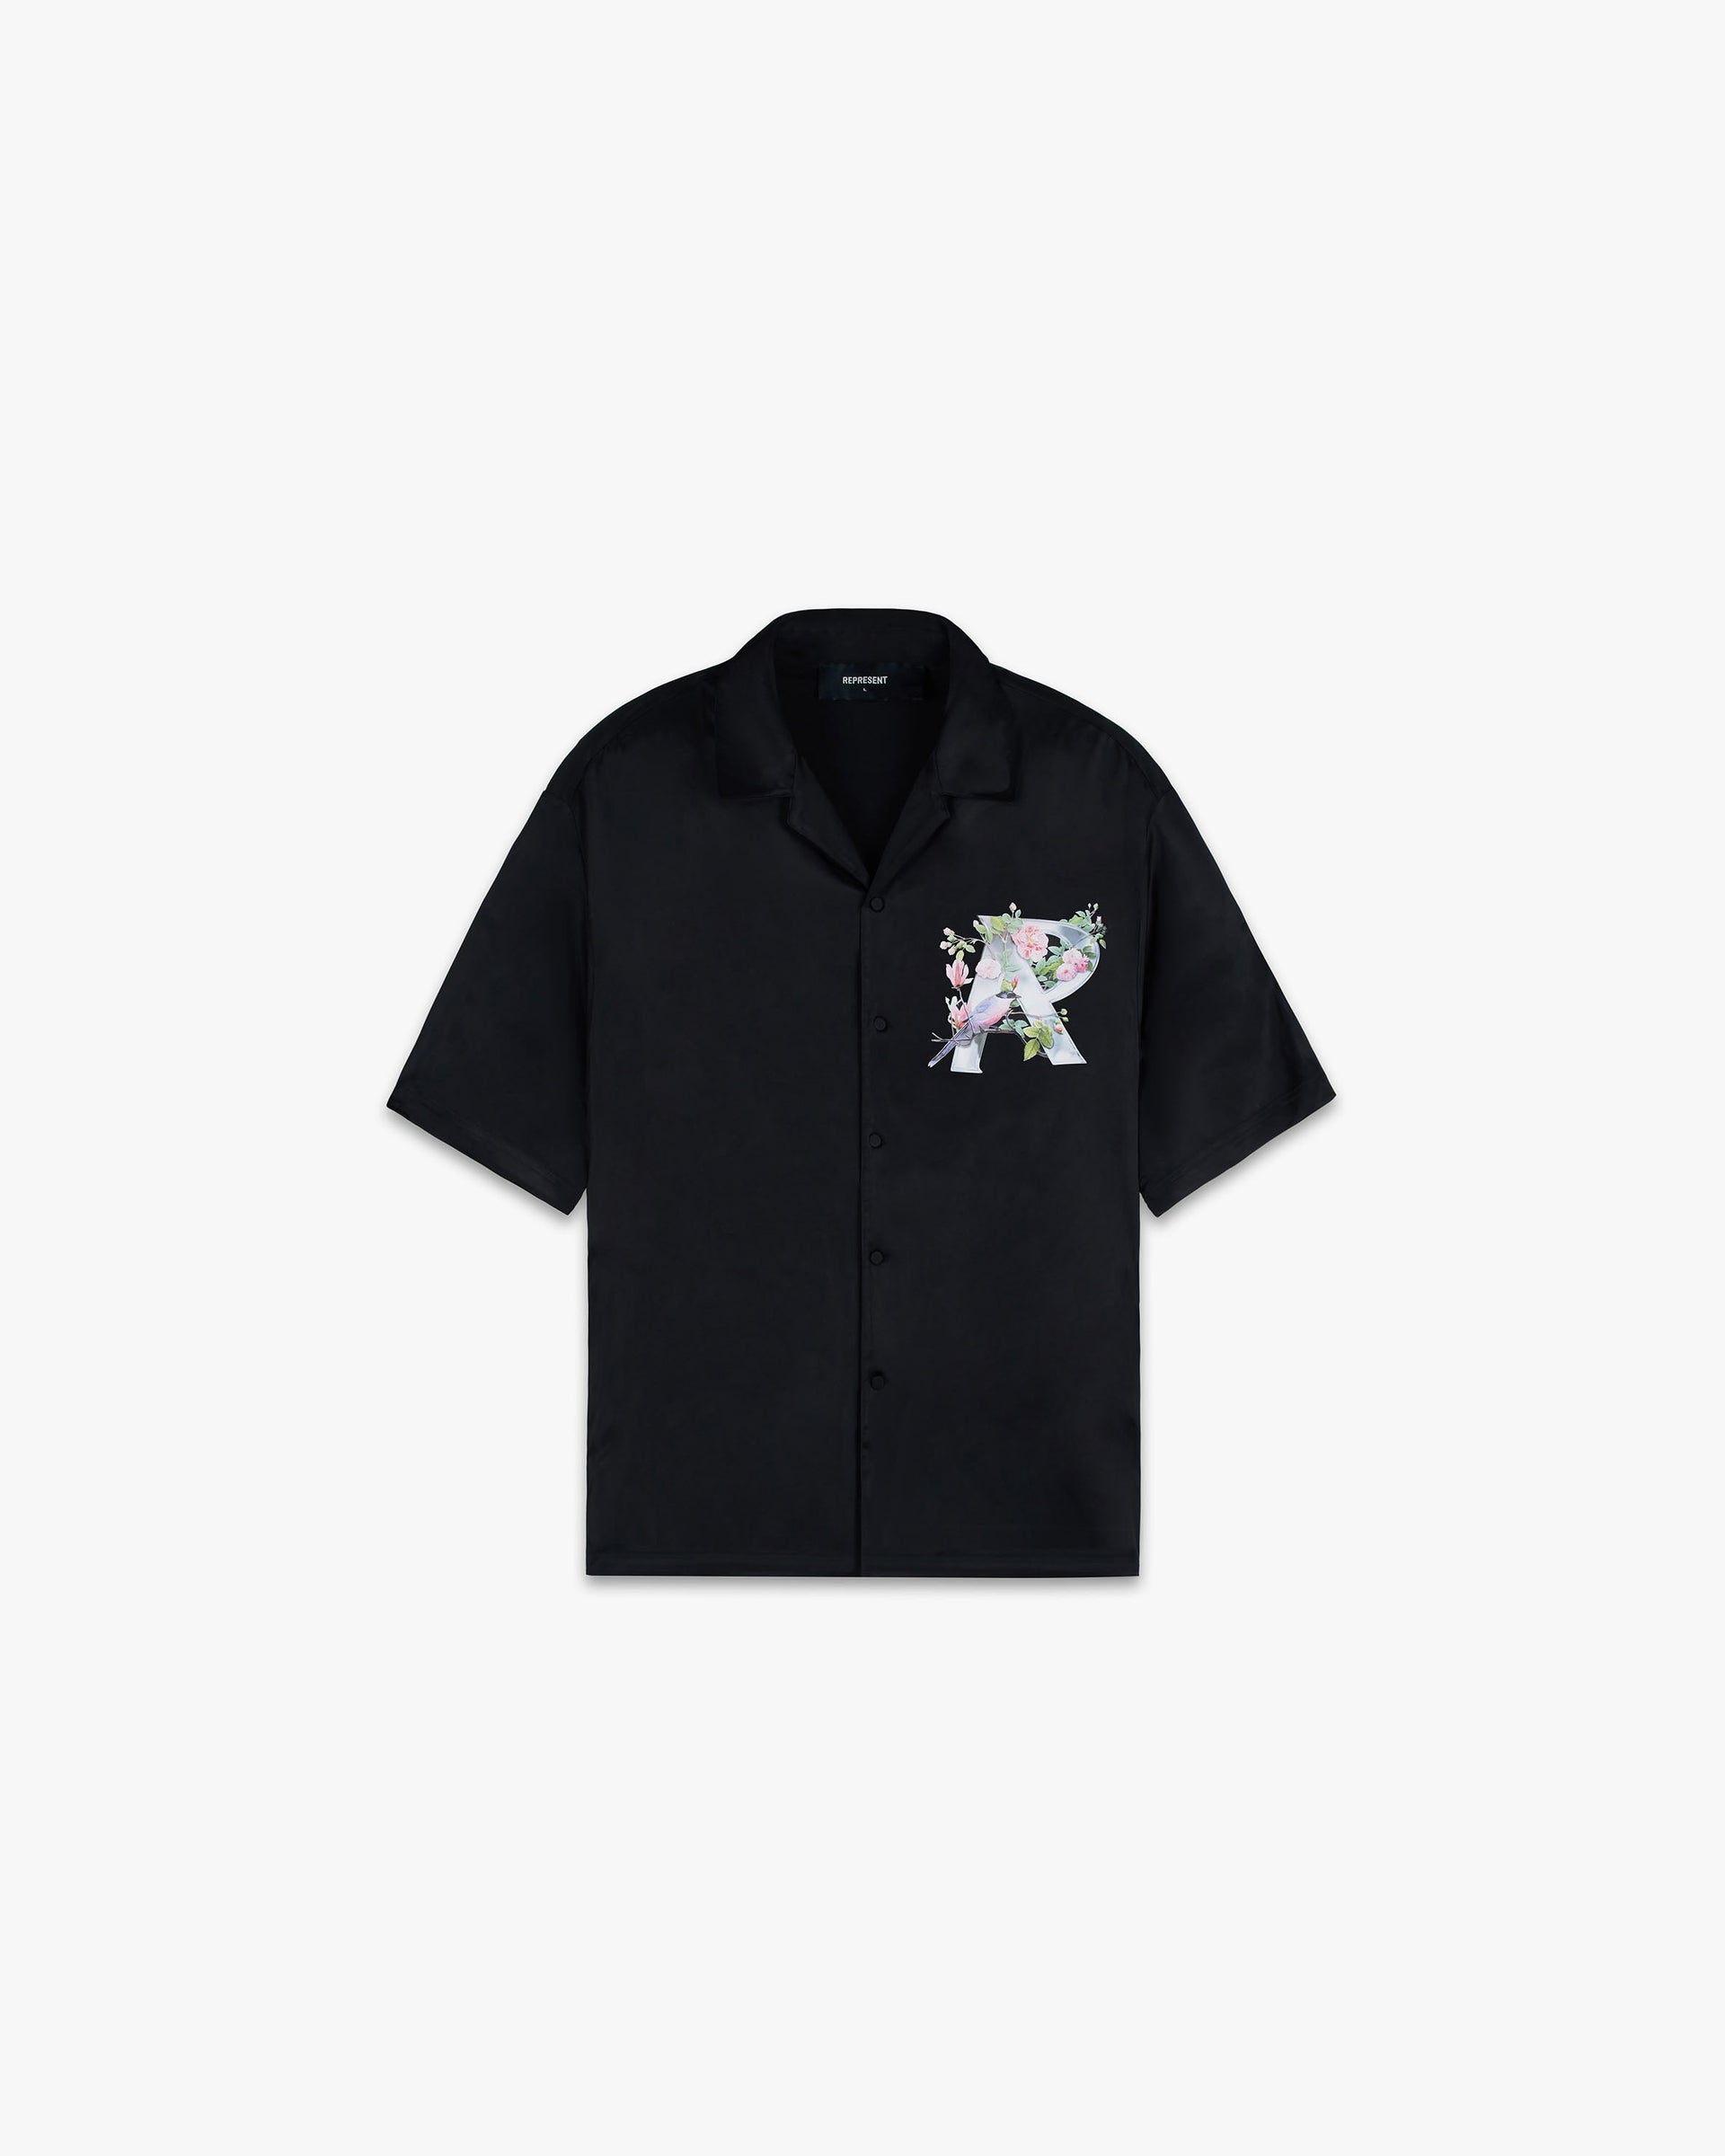 Floral Initial Shirt | Black Shirts SC23 | Represent Clo